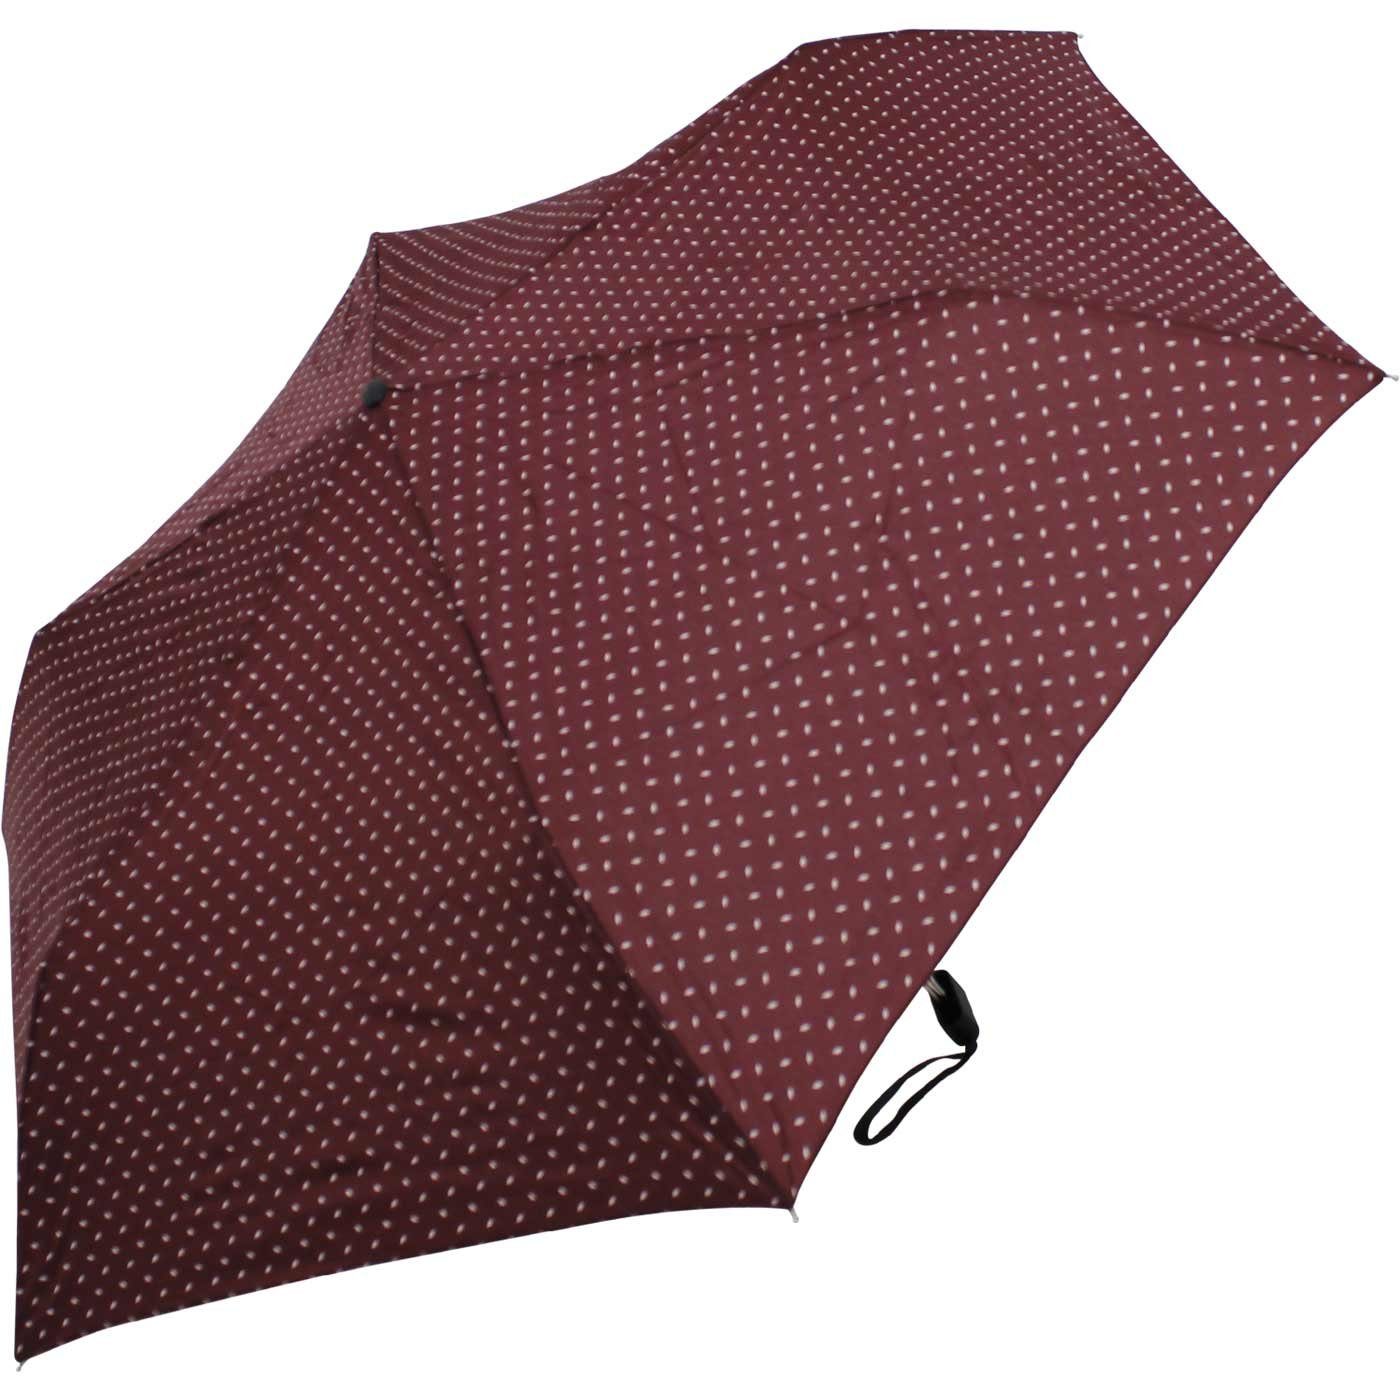 doppler® Taschenregenschirm und Tasche, dieser jede ein Begleiter flacher für findet leichter überall Platz Schirm bordeaux treue